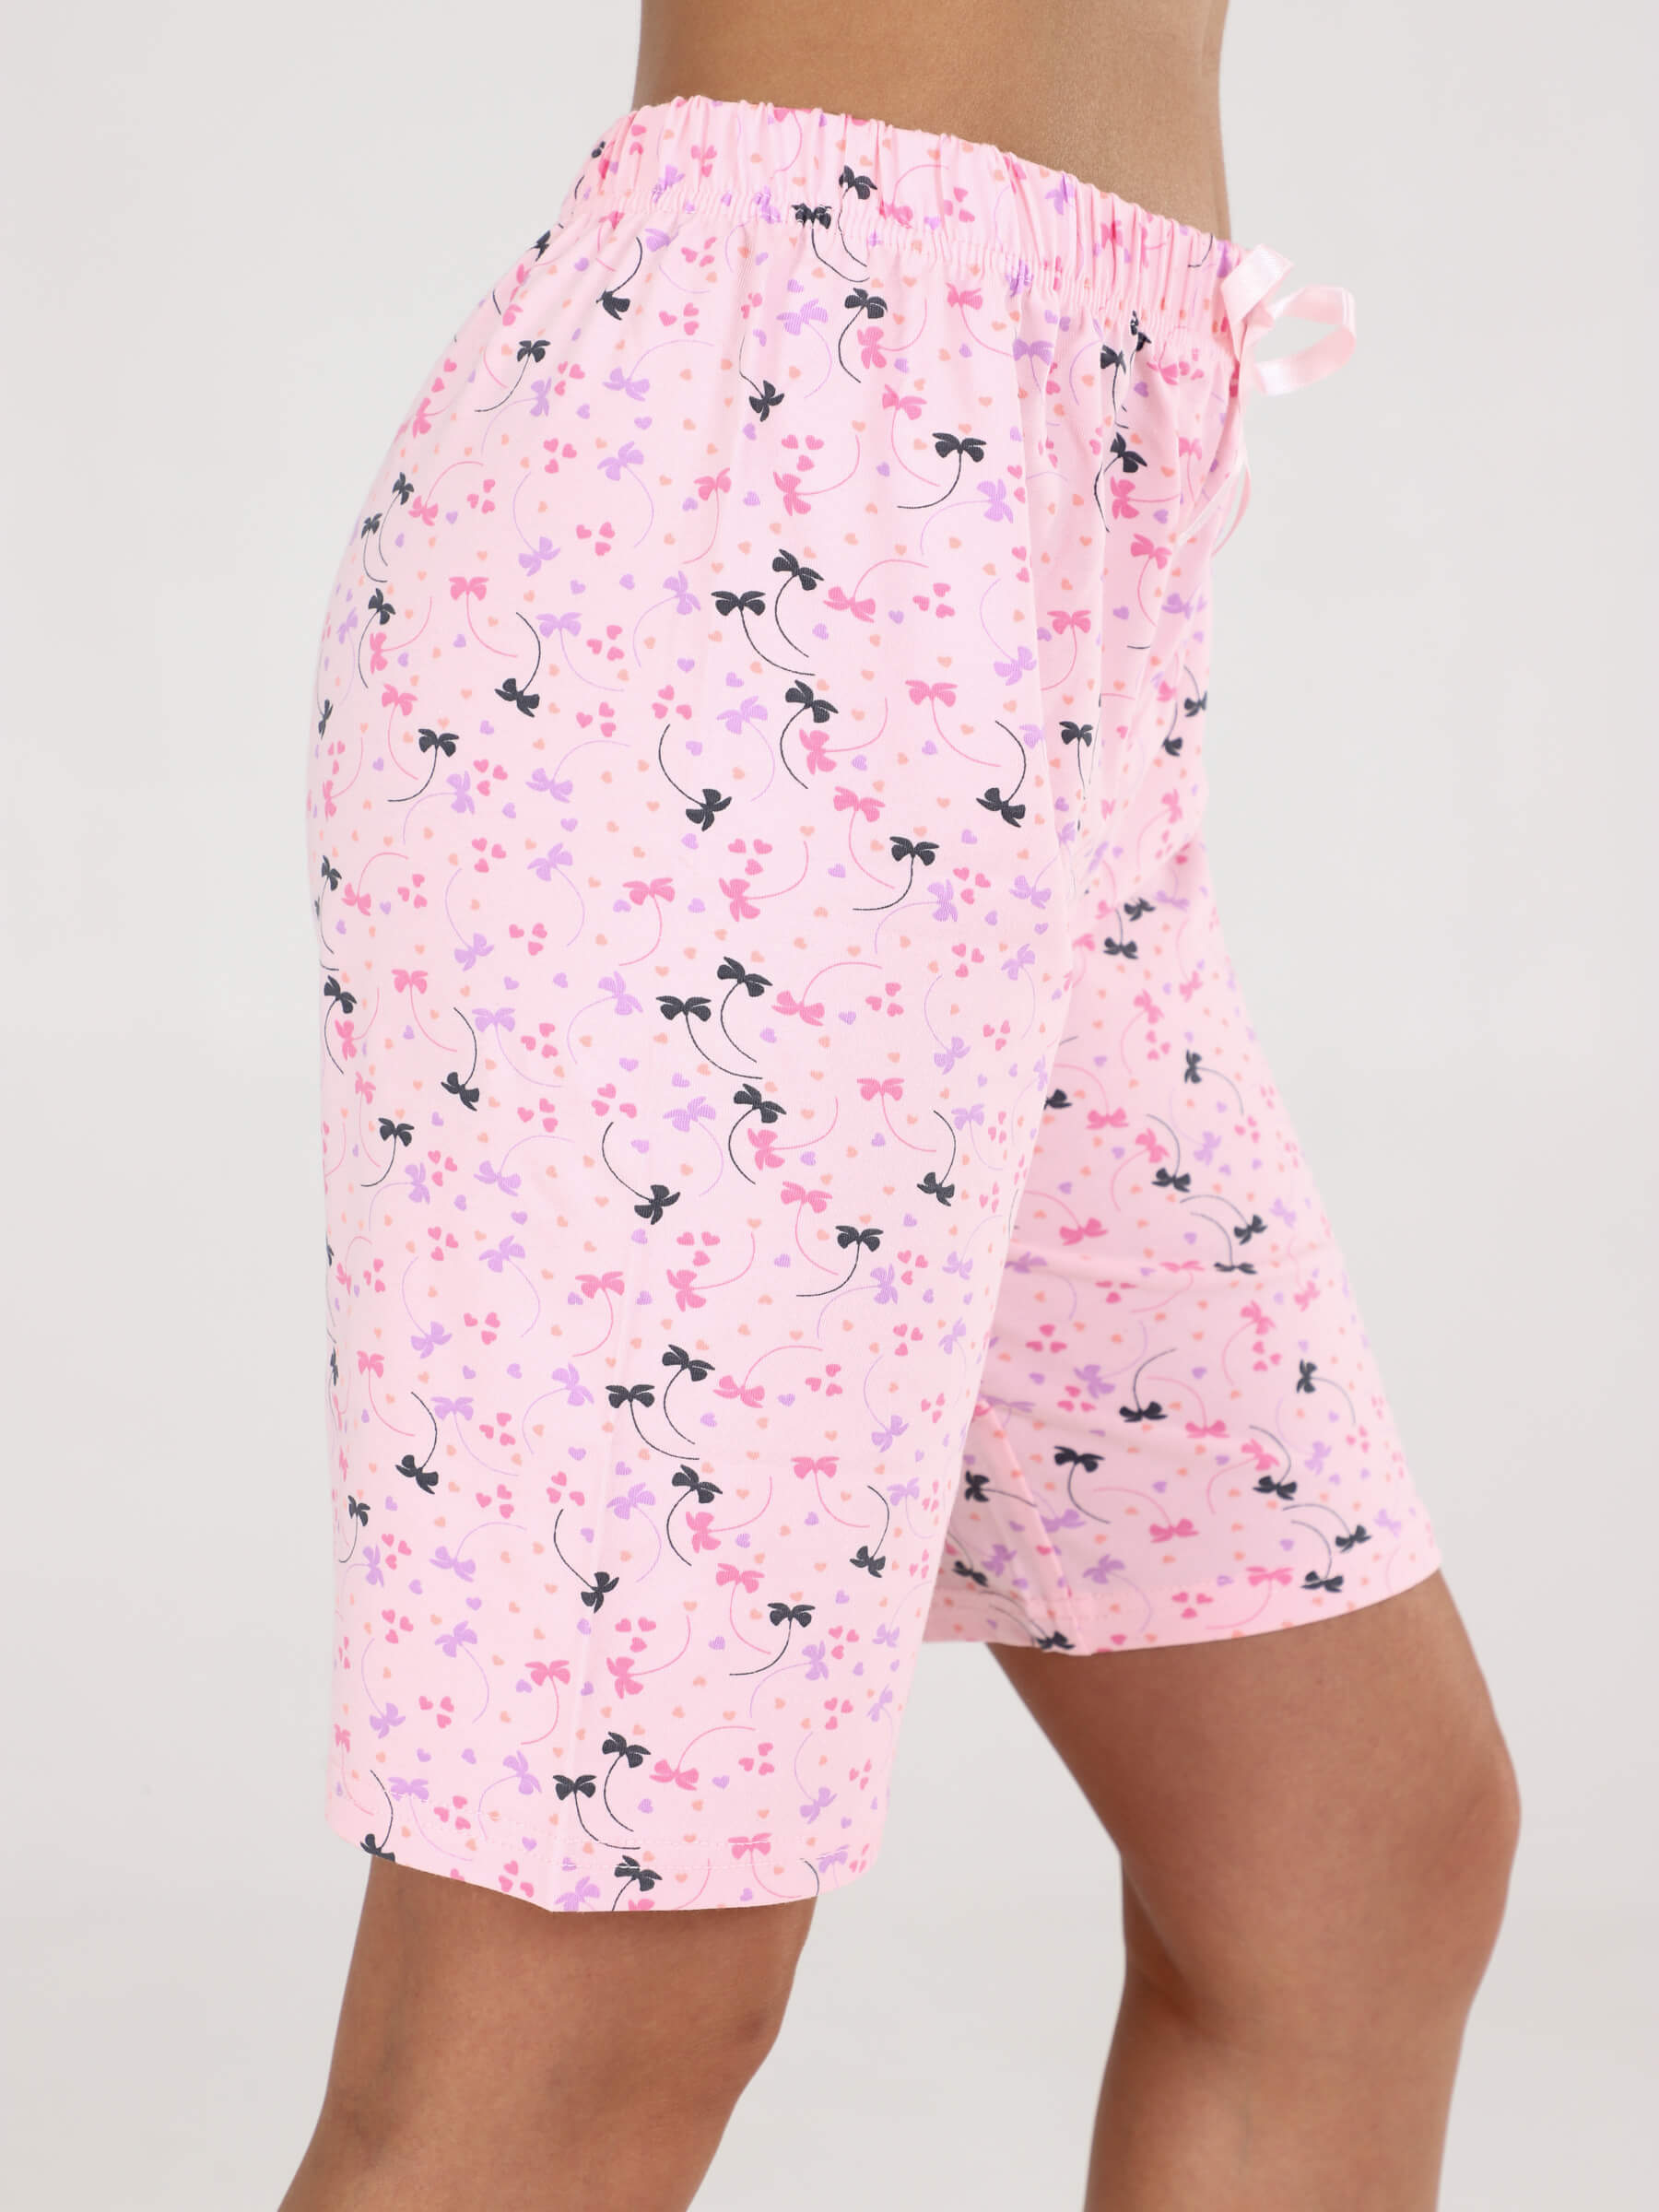 4860 Комплект женский майка+шорты, розовый бантики